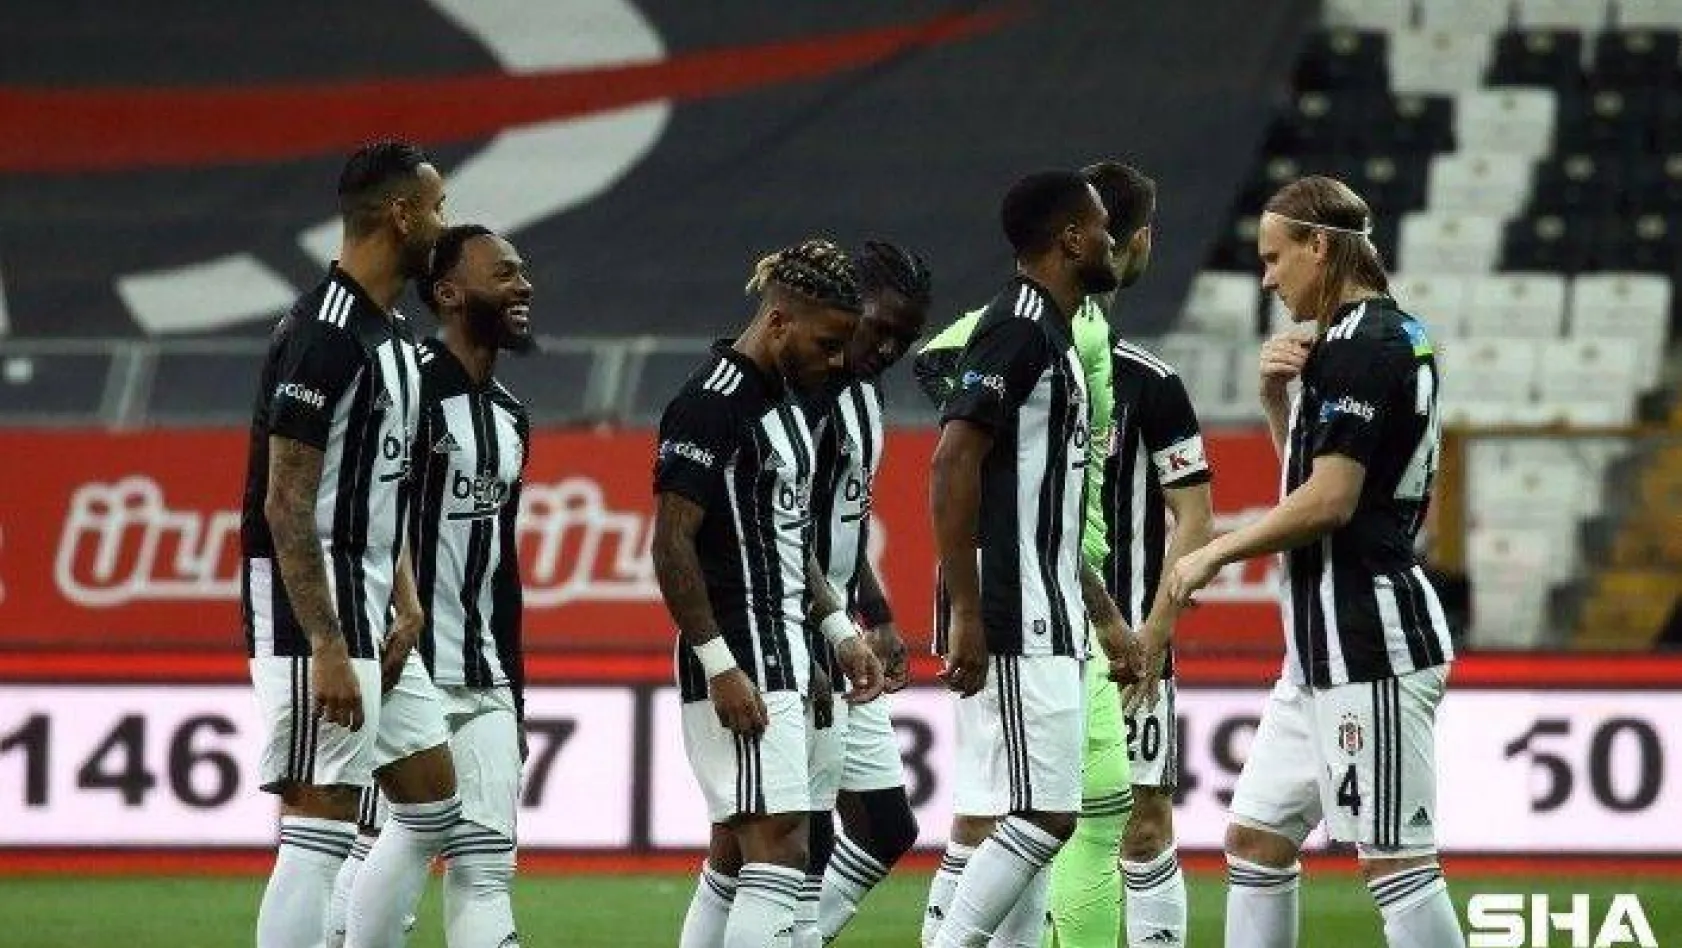 Süper Lig: Beşiktaş: 0 - Karagümrük: 0 (Maç devam ediyor)